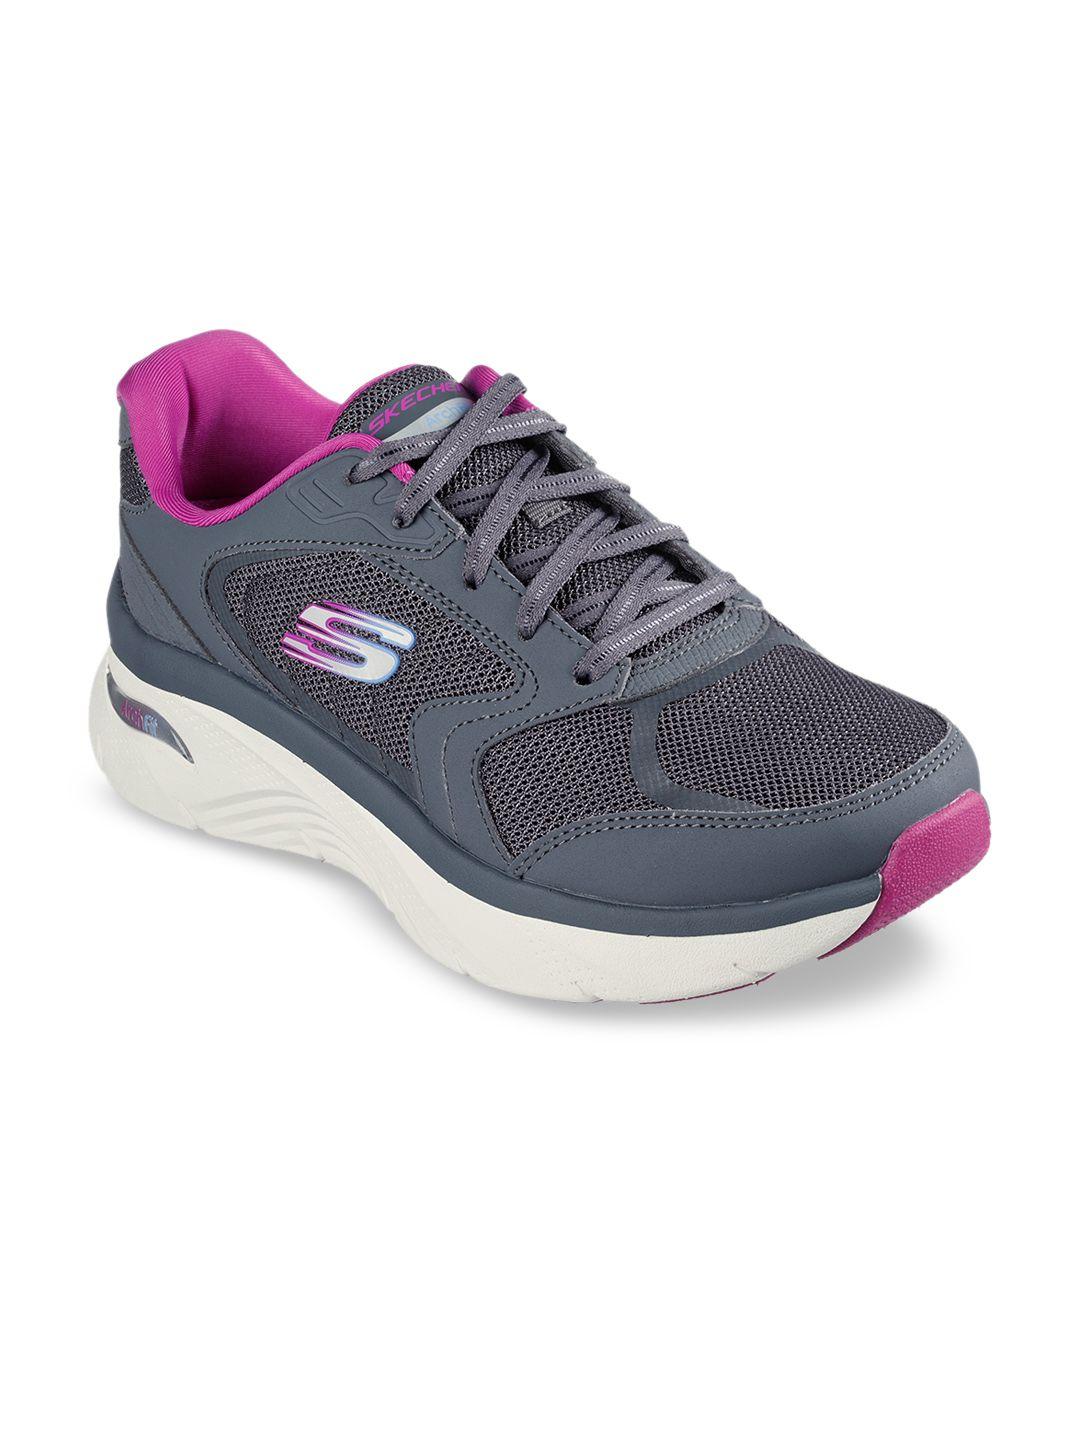 skechers women charcoal sneakers sports shoe